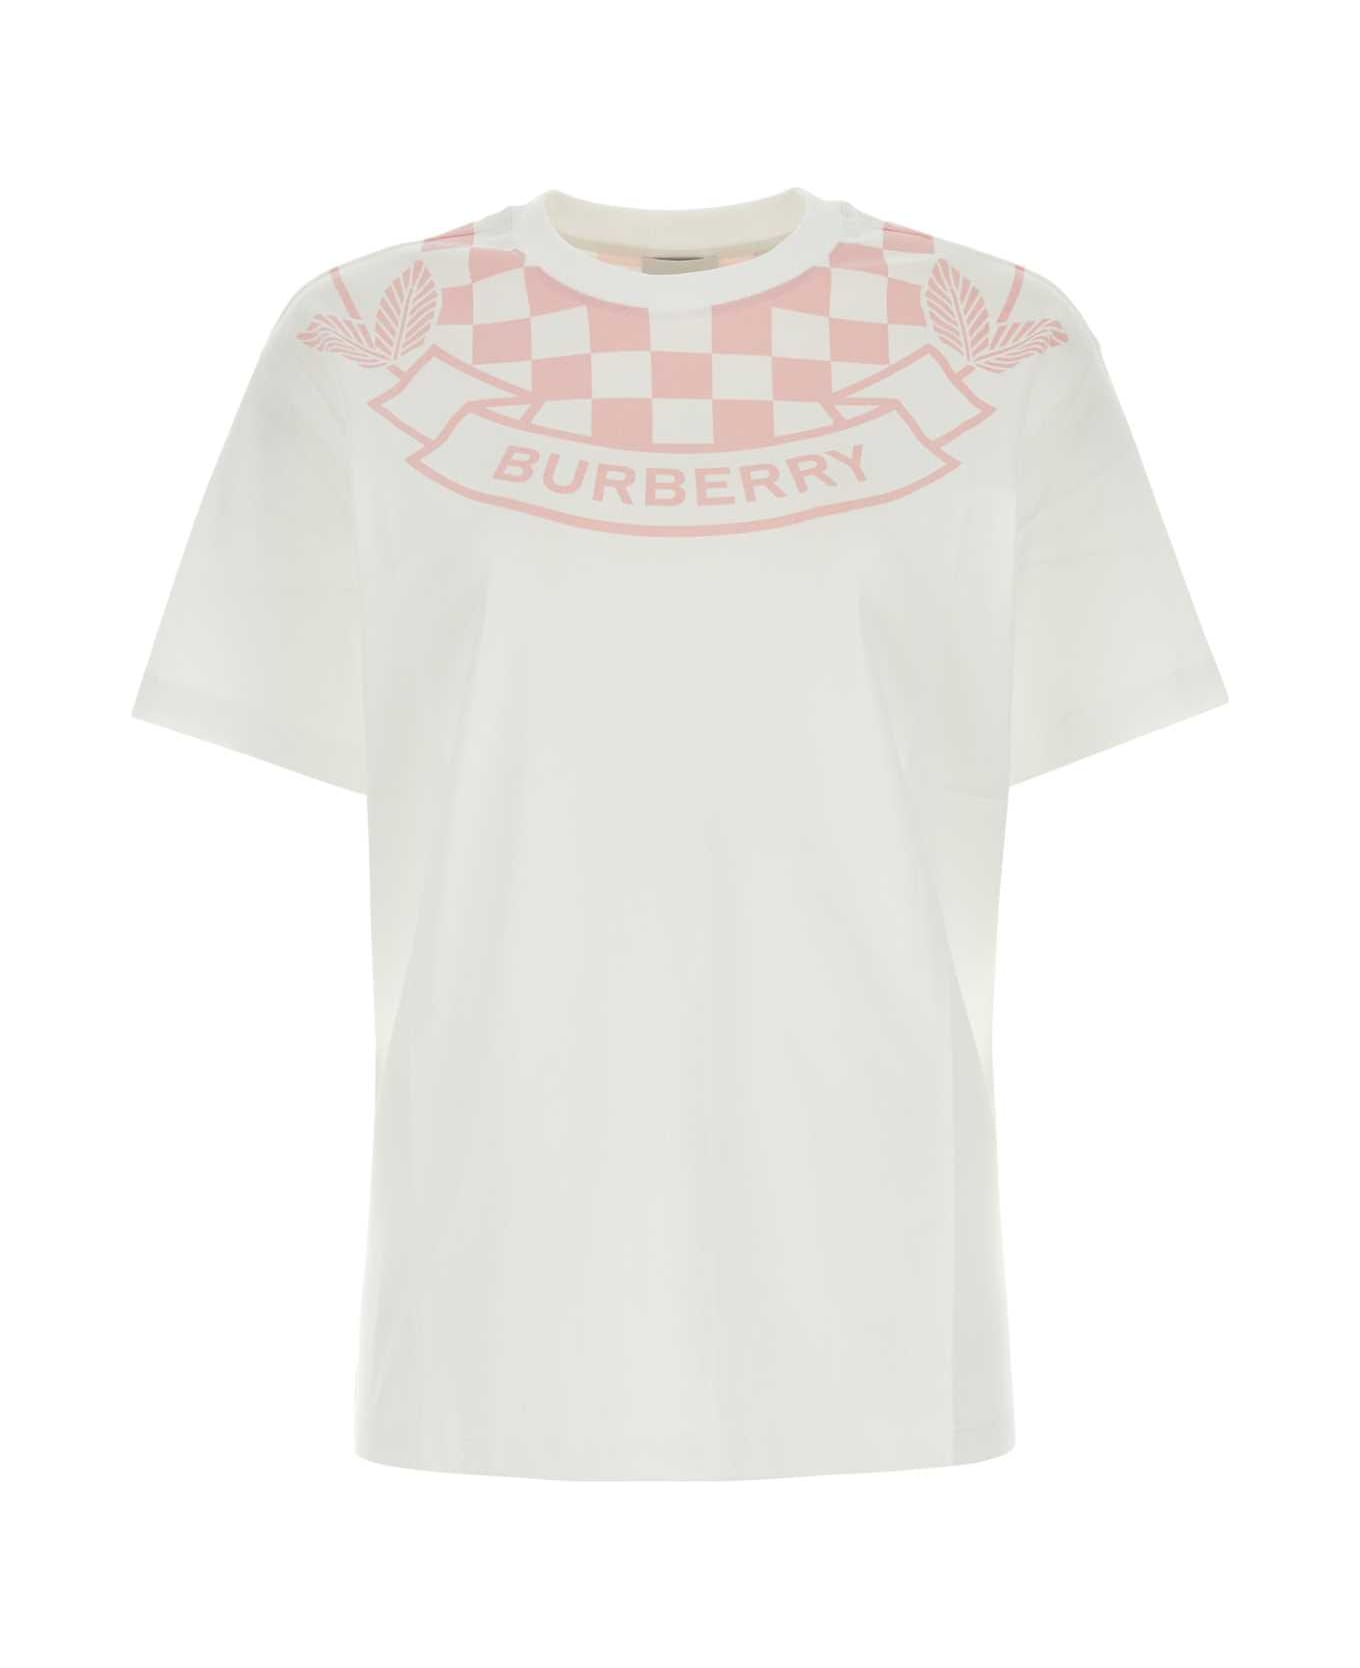 Burberry White Cotton T-shirt - WHITE Tシャツ